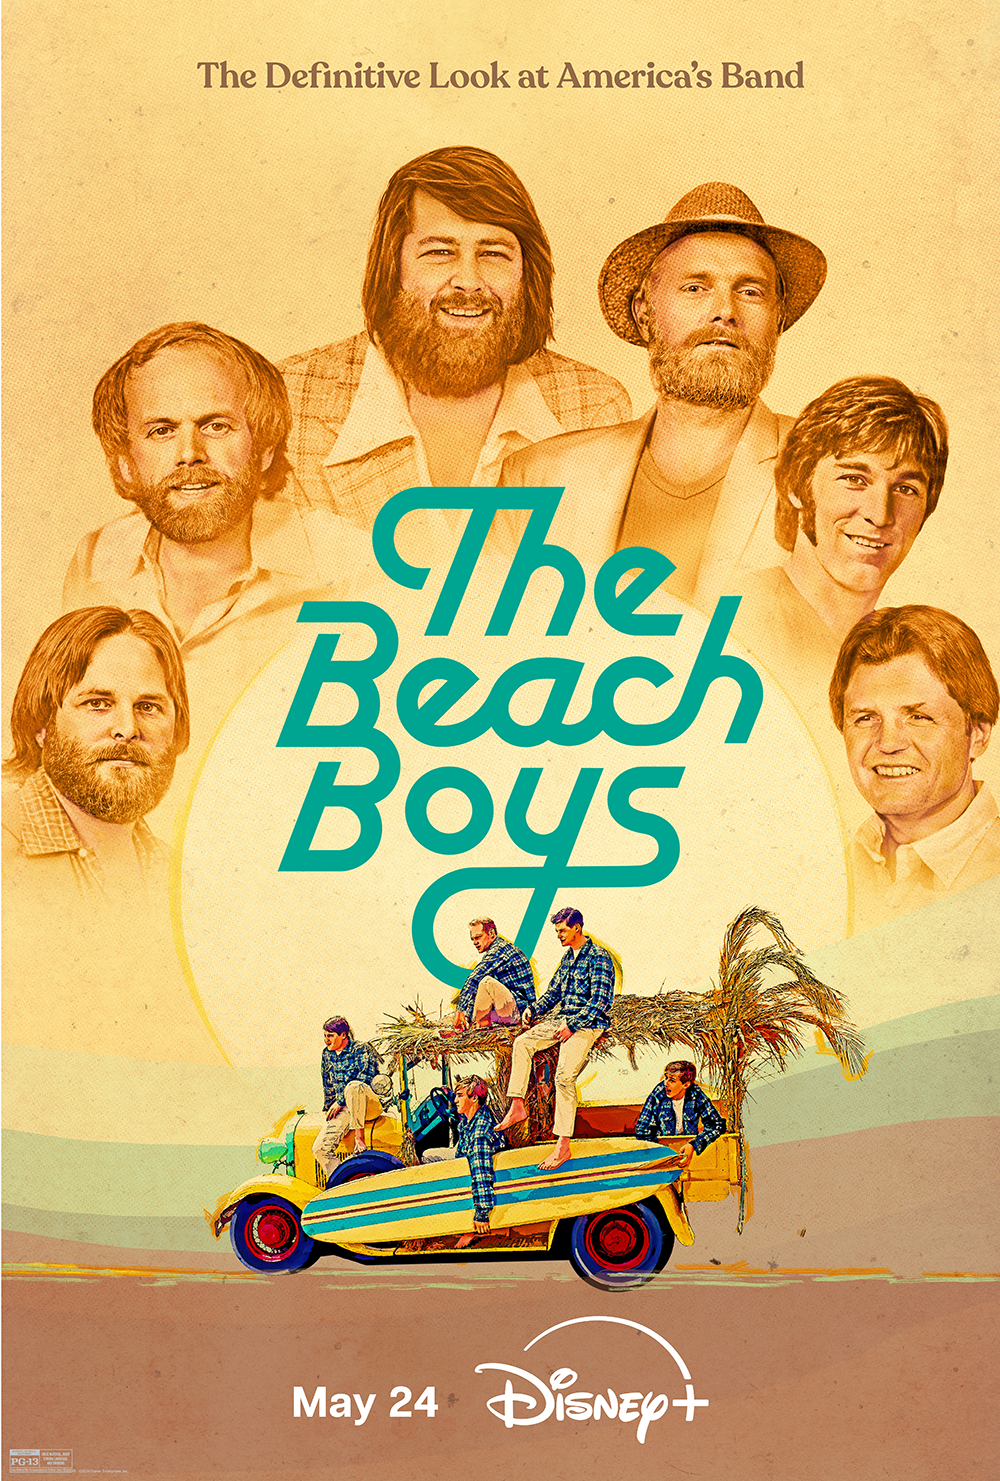 ¡Sumérgete en la leyenda! Descubre 'The Beach Boys', el documental que te transportará al corazón del sonido que marcó una época, solo en Disney+ este 24 de mayo